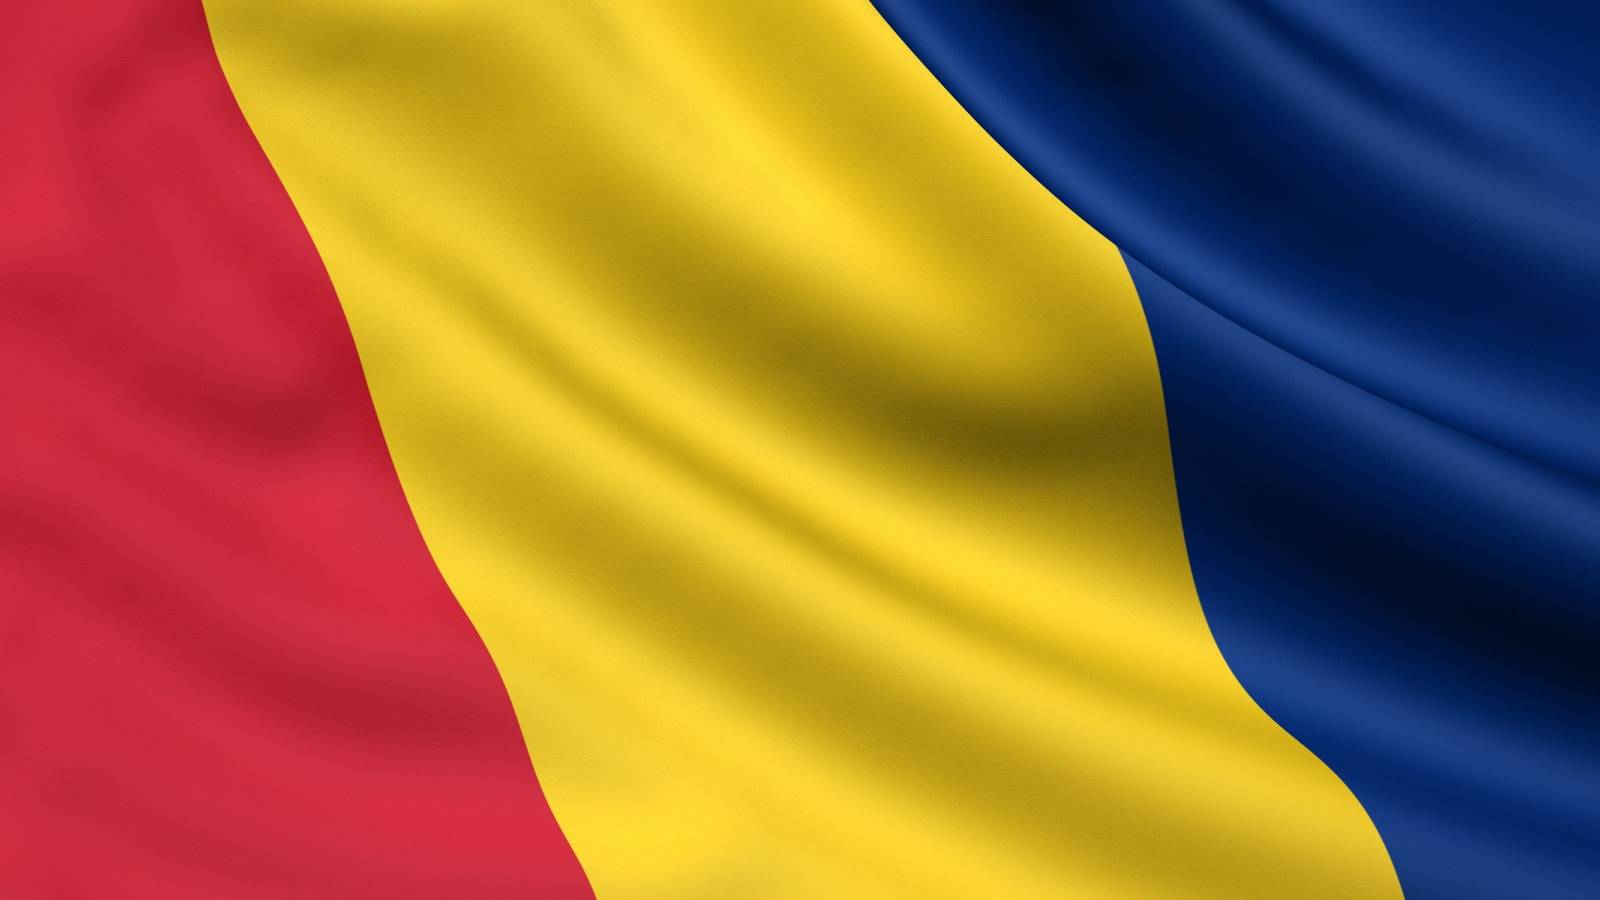 COVID-boodschap van de Roemeense autoriteiten voor mensen in golf 4